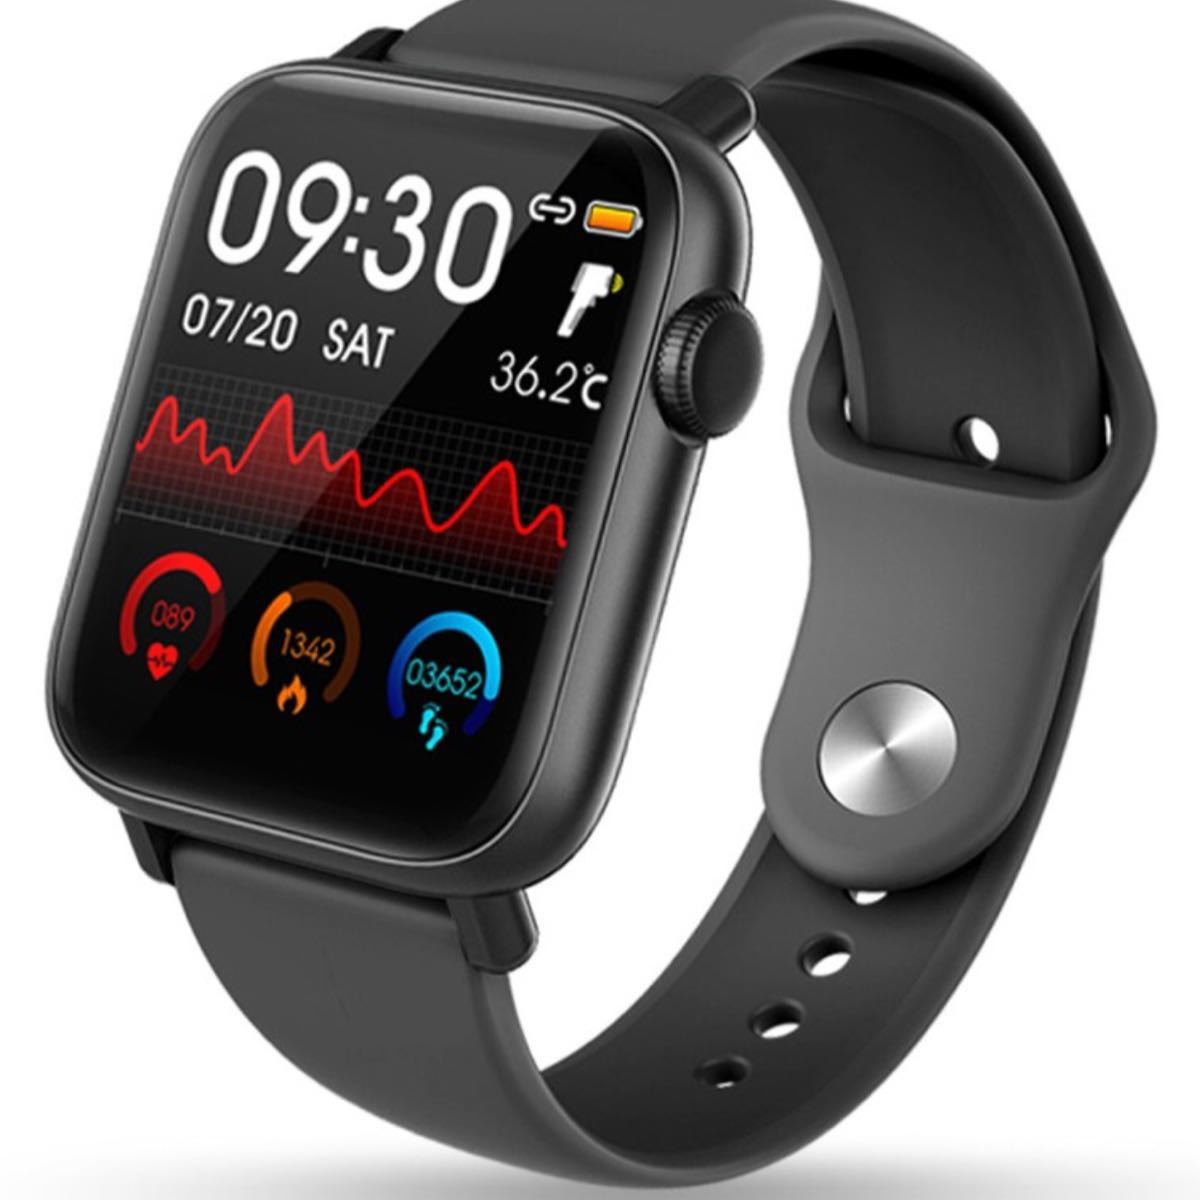 スマートウォッチ 24時間体温監視 フルタッチスクリーン血中酸素濃度計大画面 着信通知 睡眠検測 歩数計 腕時計